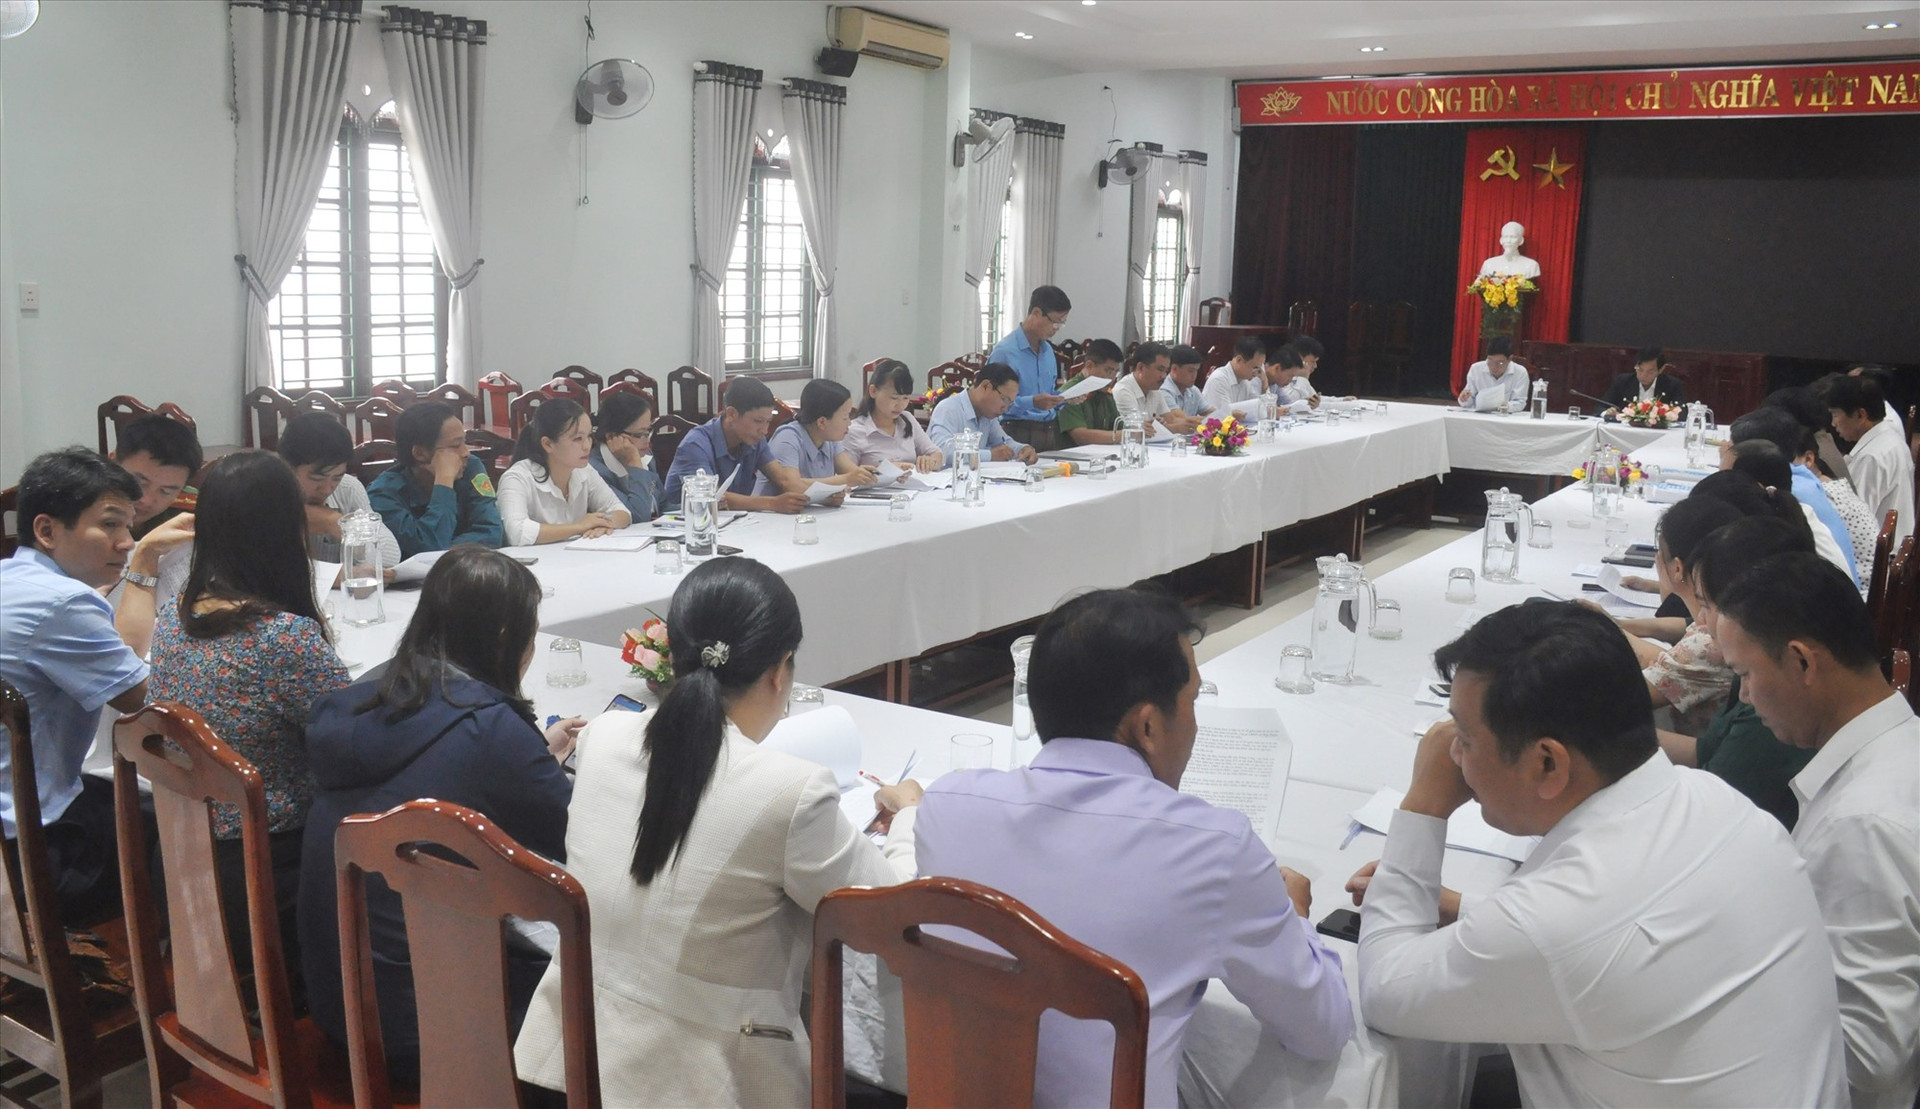 Đoàn kiểm tra số 2 của UBBC tỉnh do Trưởng ban Tổ chức Tỉnh ủy Nguyễn Chín làm trưởng đoàn làm việc với UBBC huyện Hiệp Đức về công tác chuẩn bị bầu cử vào sáng nay 25.3. Ảnh: N.Đ